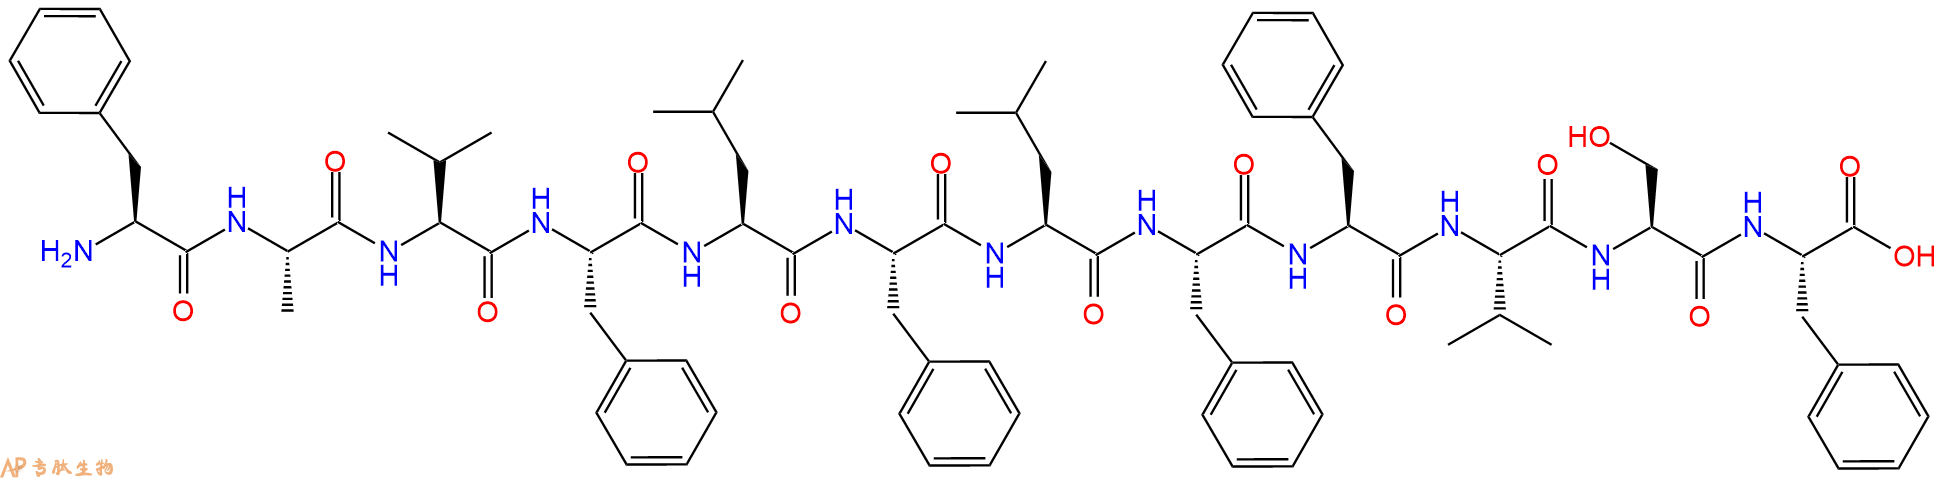 专肽生物产品H2N-Phe-Ala-Val-Phe-Leu-Phe-Leu-Phe-Phe-Val-Ser-Ph